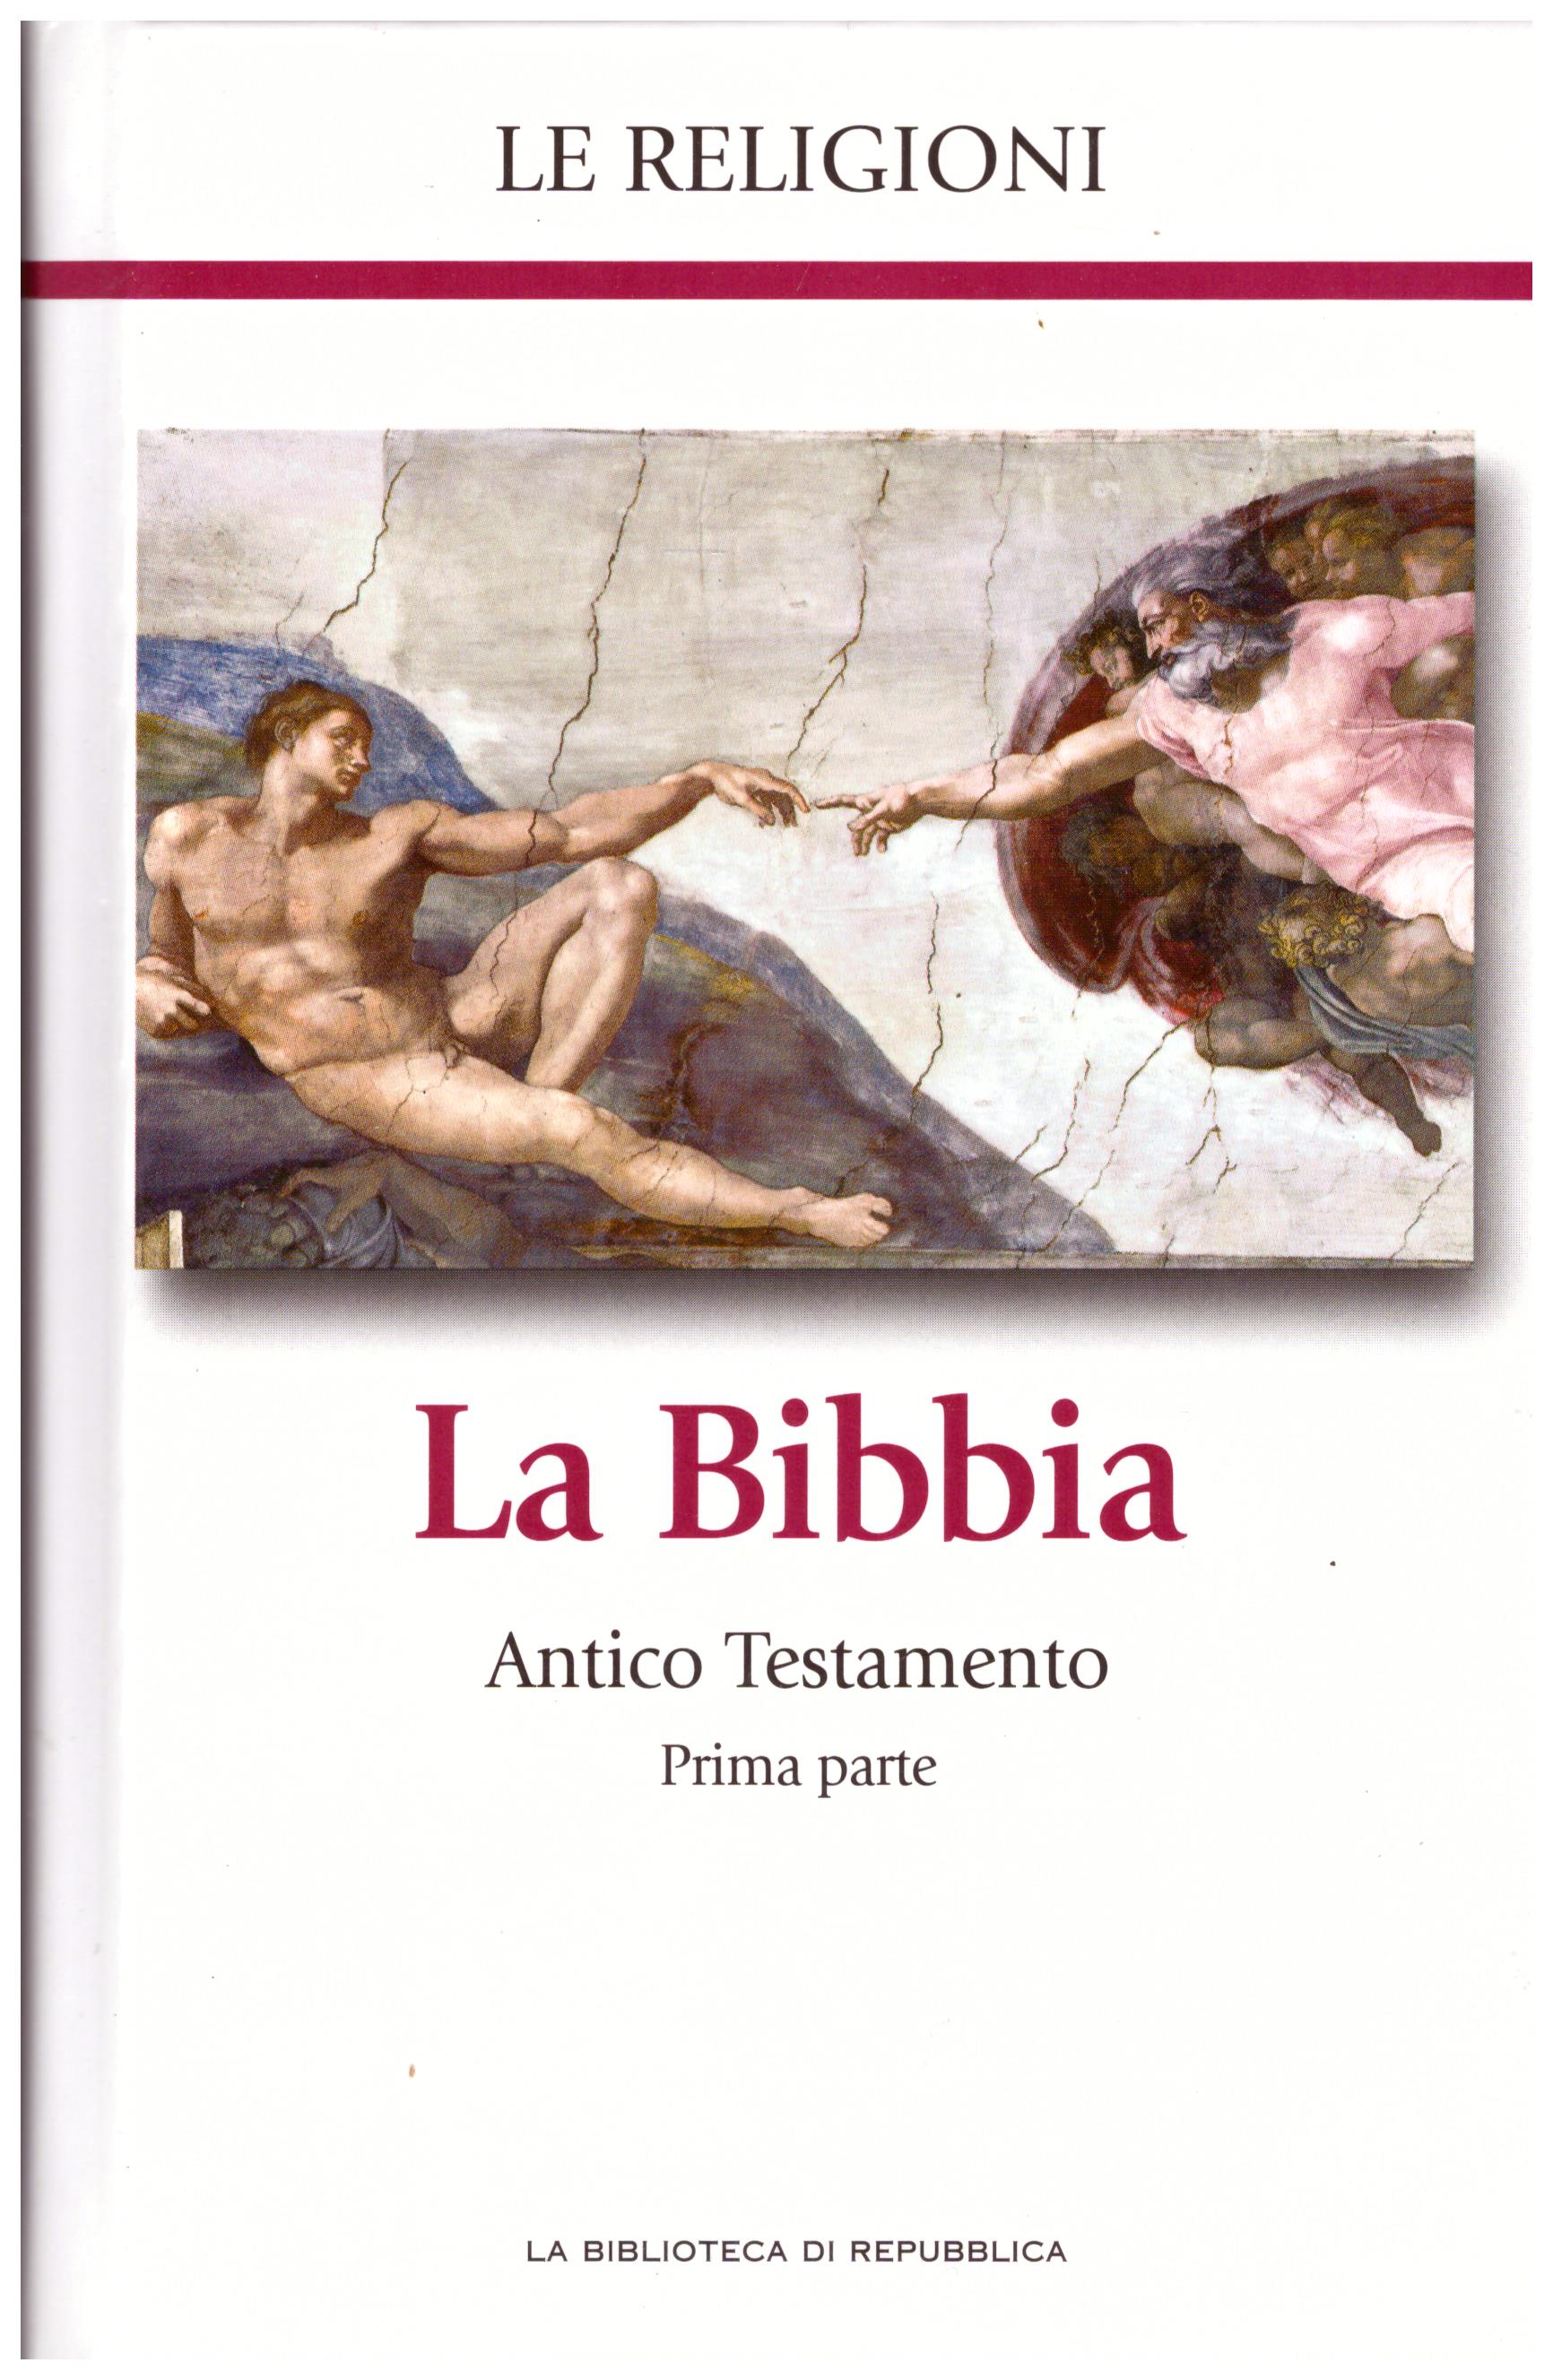 Titolo: Le religioni, La Bibbia Antico testamento prima parte N.1      Autore: AA.VV, la biblioteca di Repubblica     Editore: Piemme